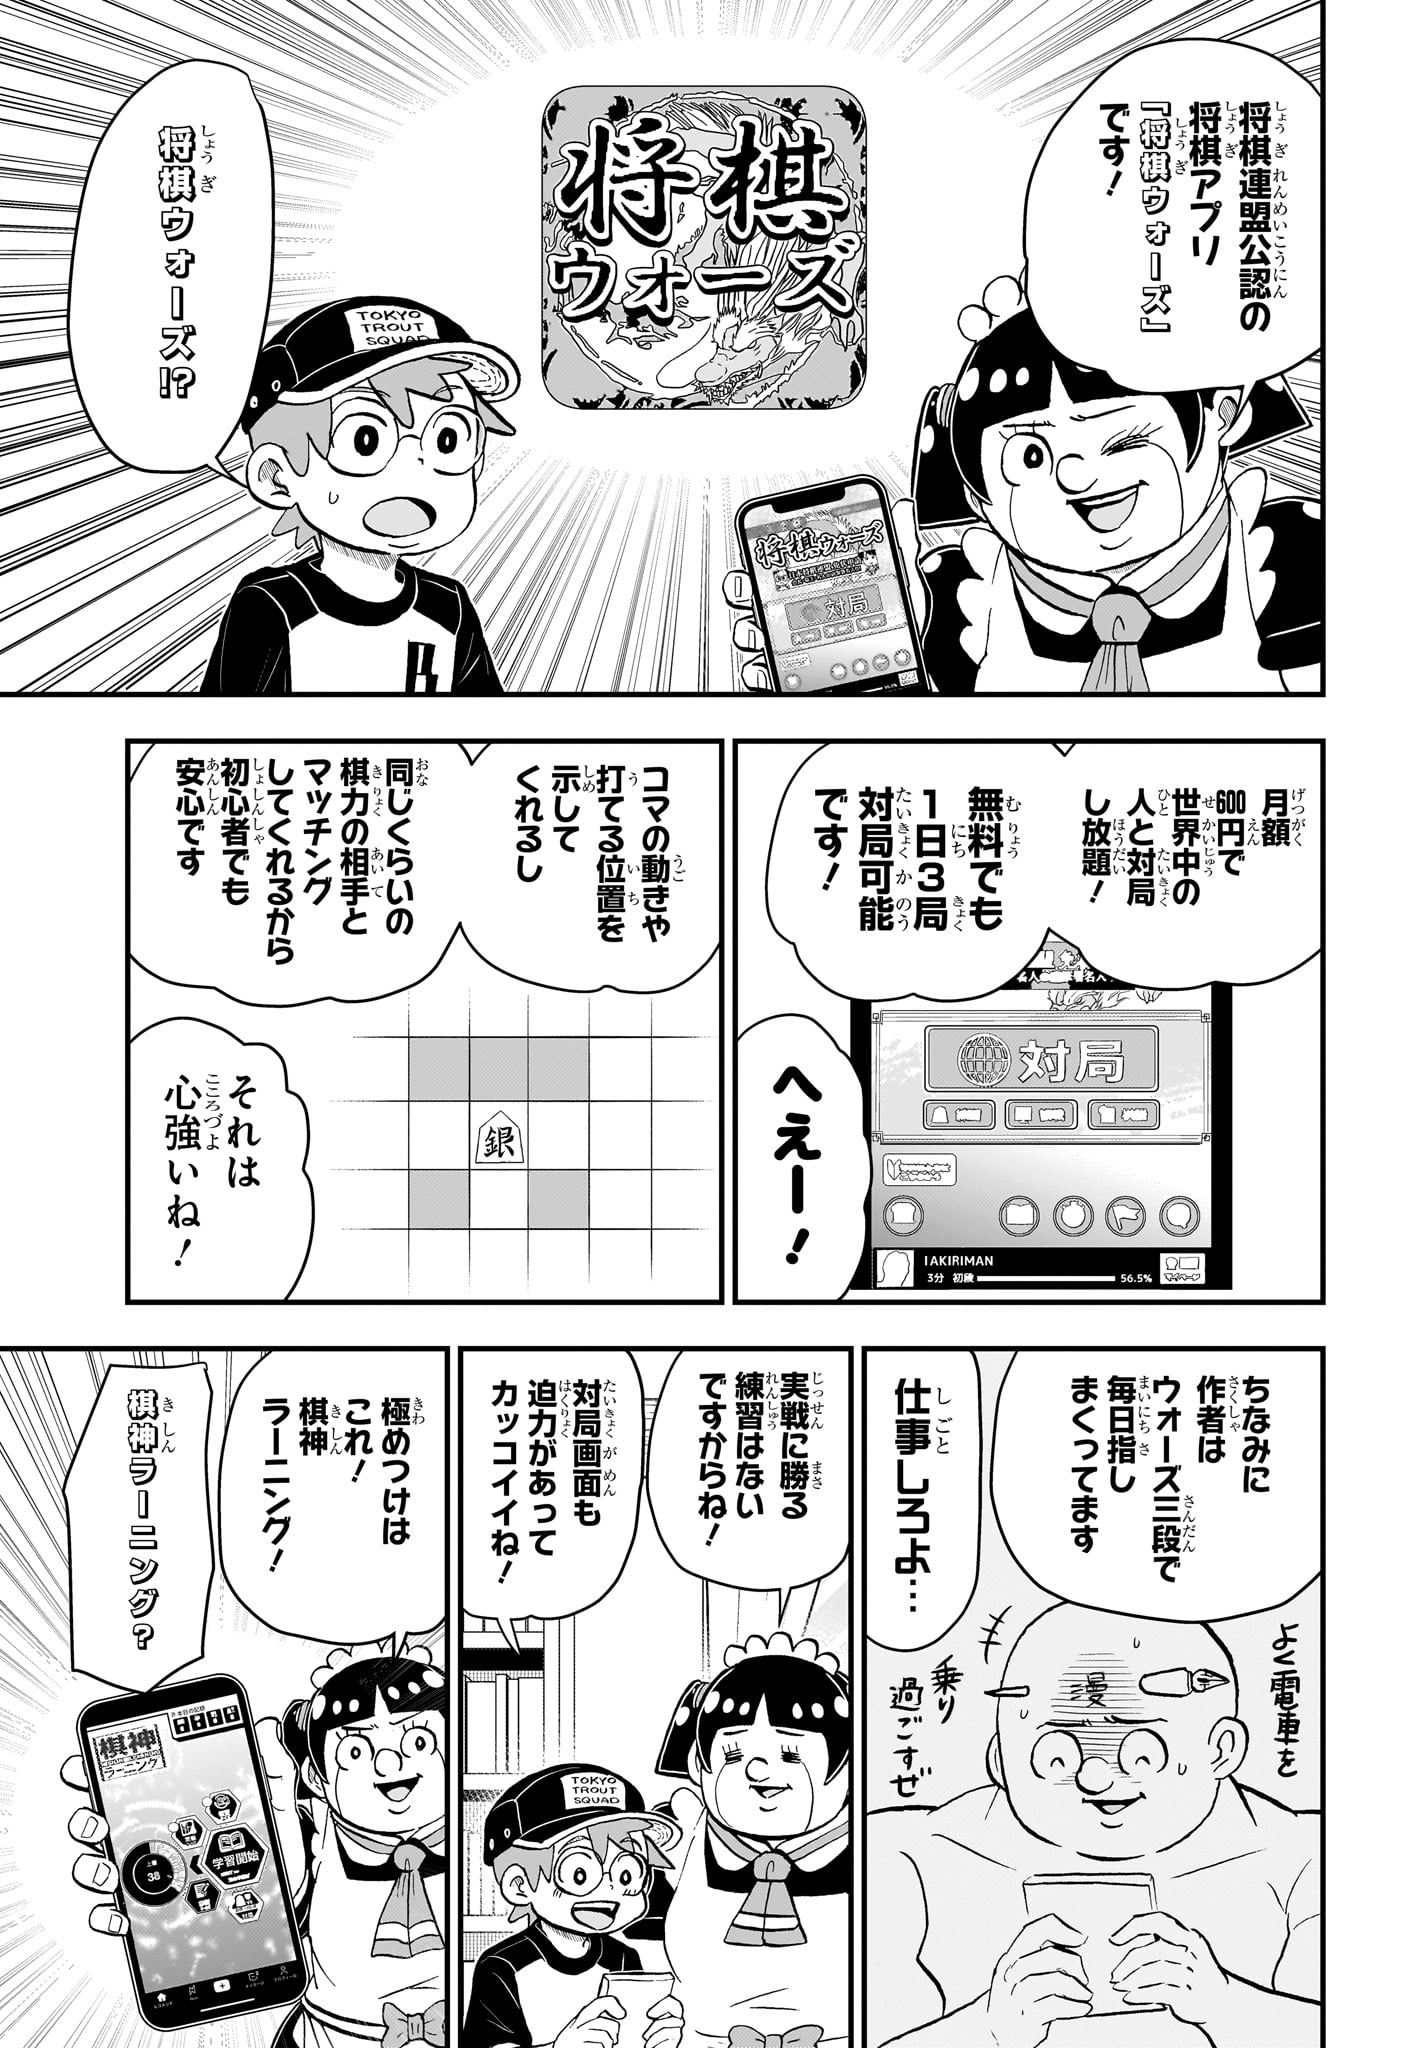 Boku to Roboko - Chapter 191 - Page 7